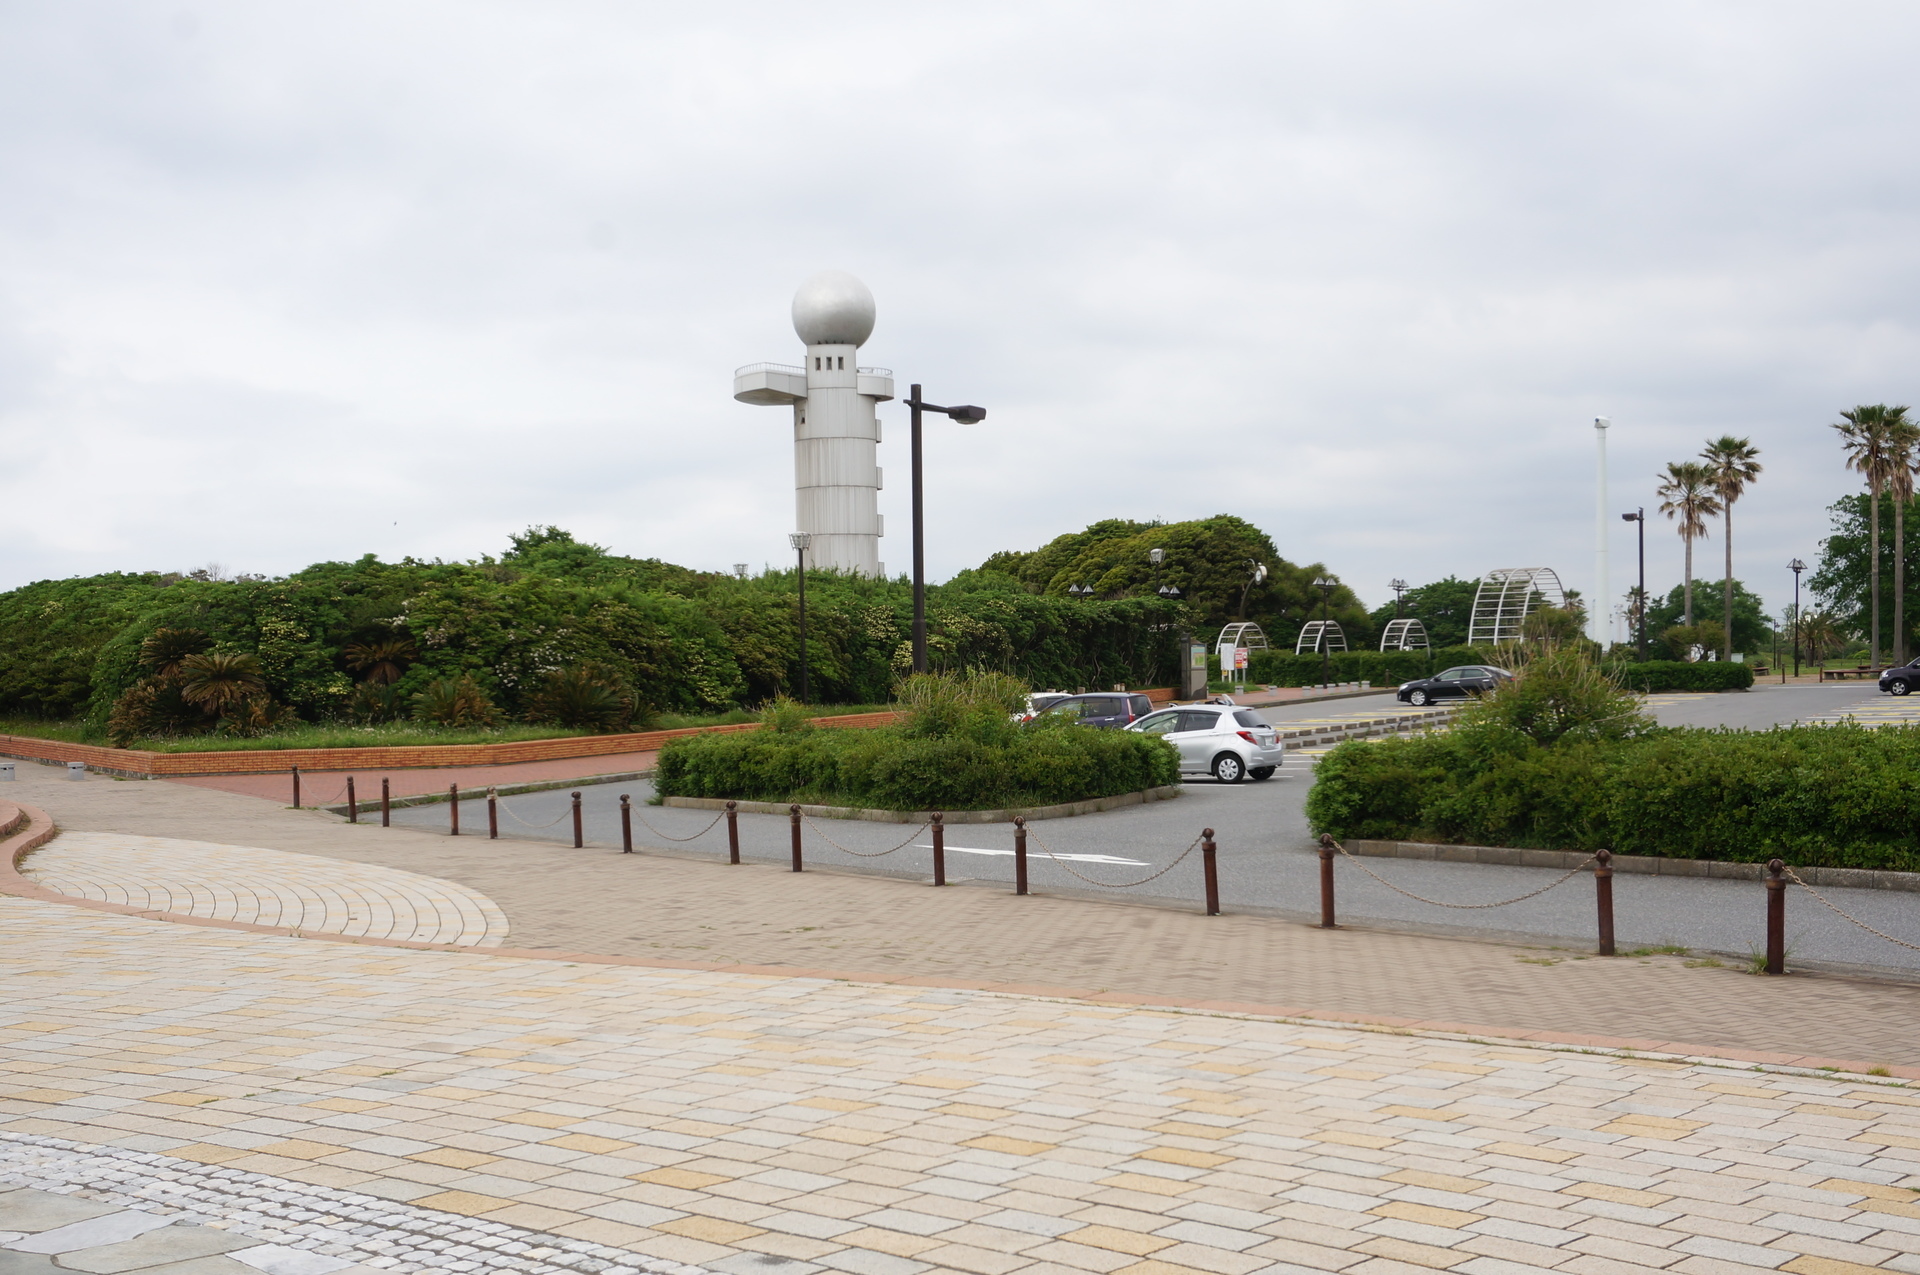 袖ヶ浦海浜公園 Ogu S Blog かずさ便り ちょっとだけpcの話も